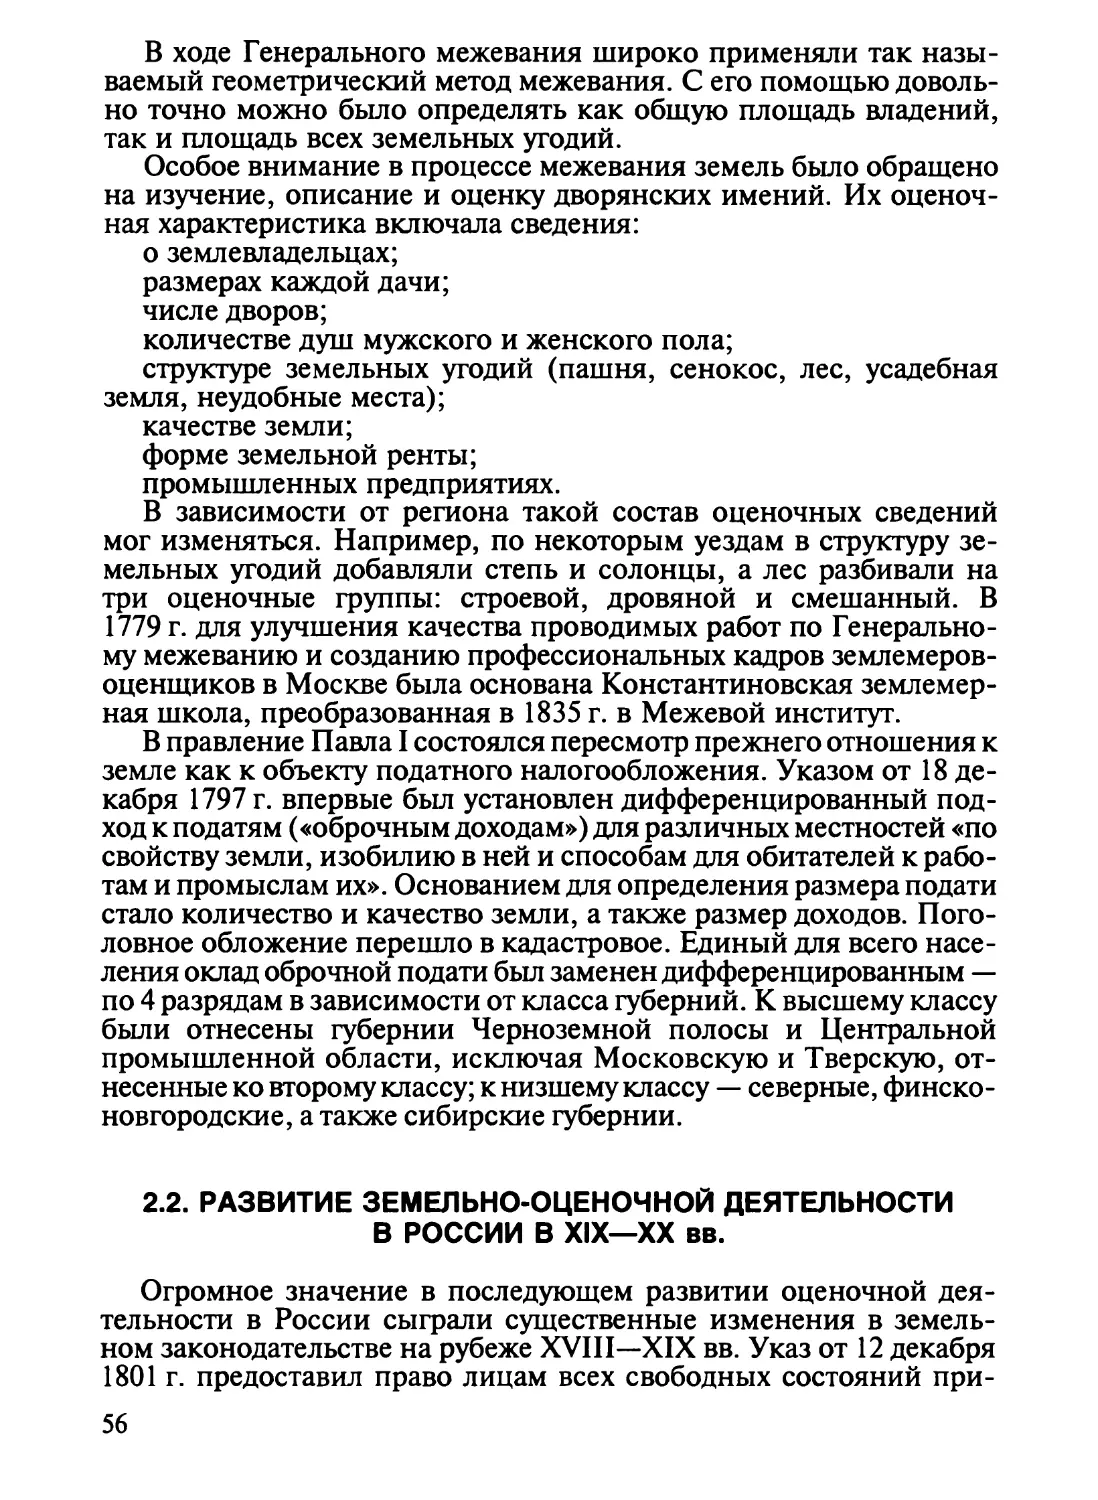 2.2. Развитие земельно-оценочной деятельности в России в XIX—XX вв